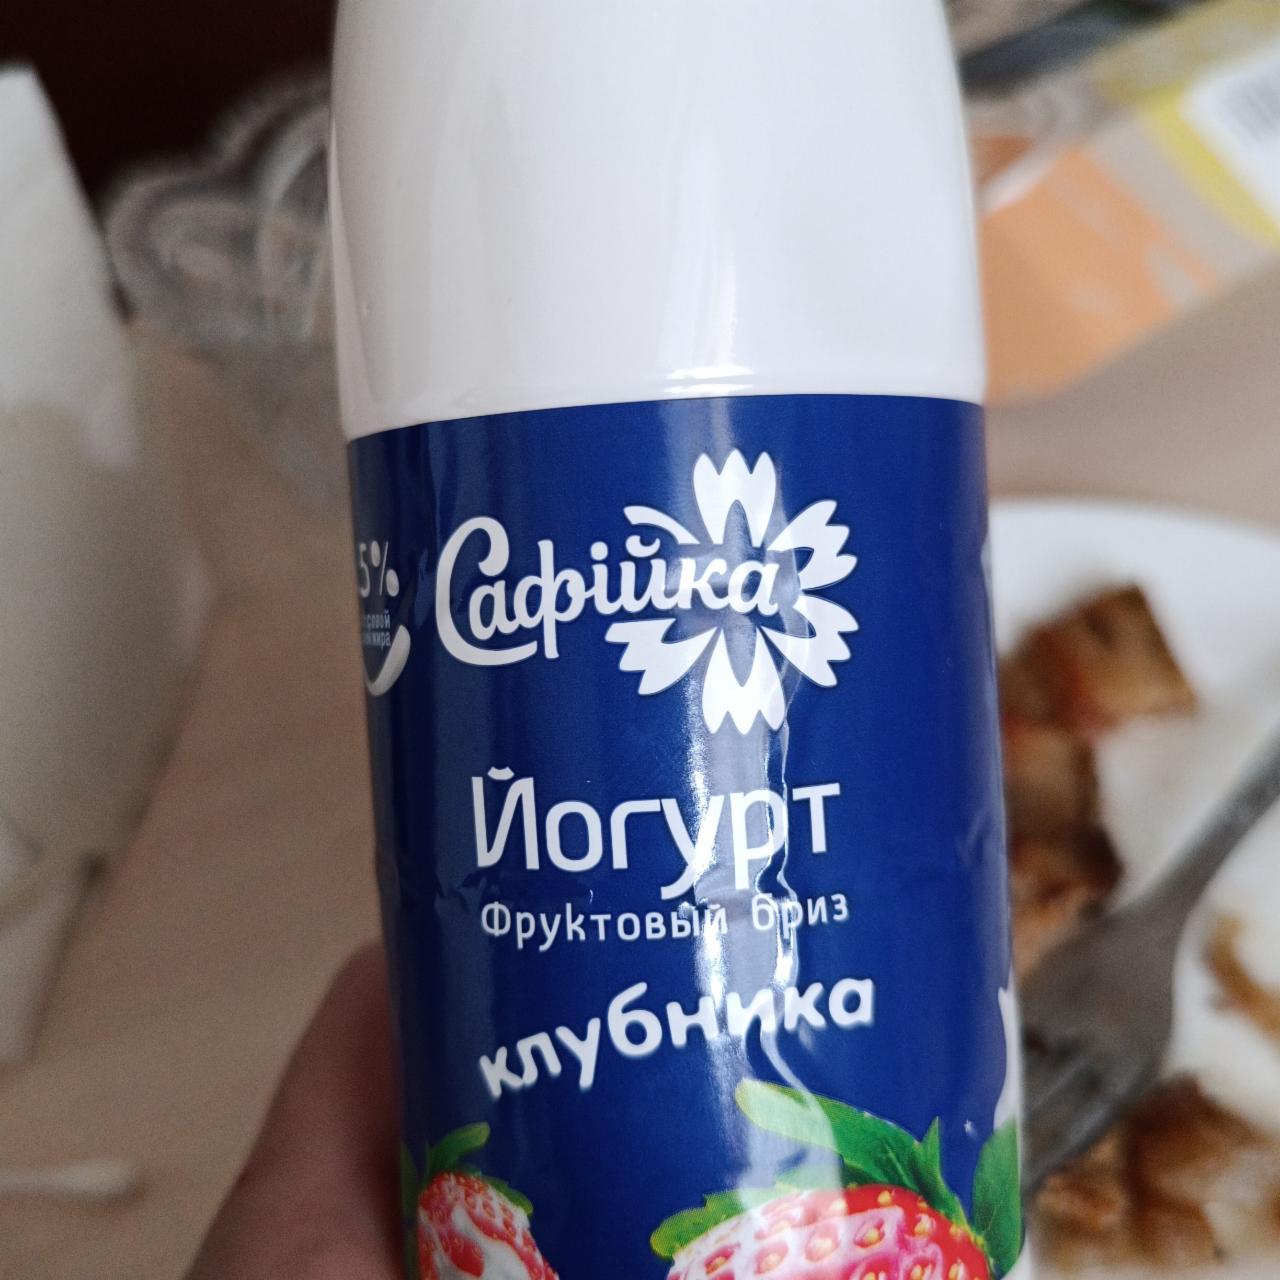 Фото - Питьевой йогурт фруктовый бриз клубника Сафiйка